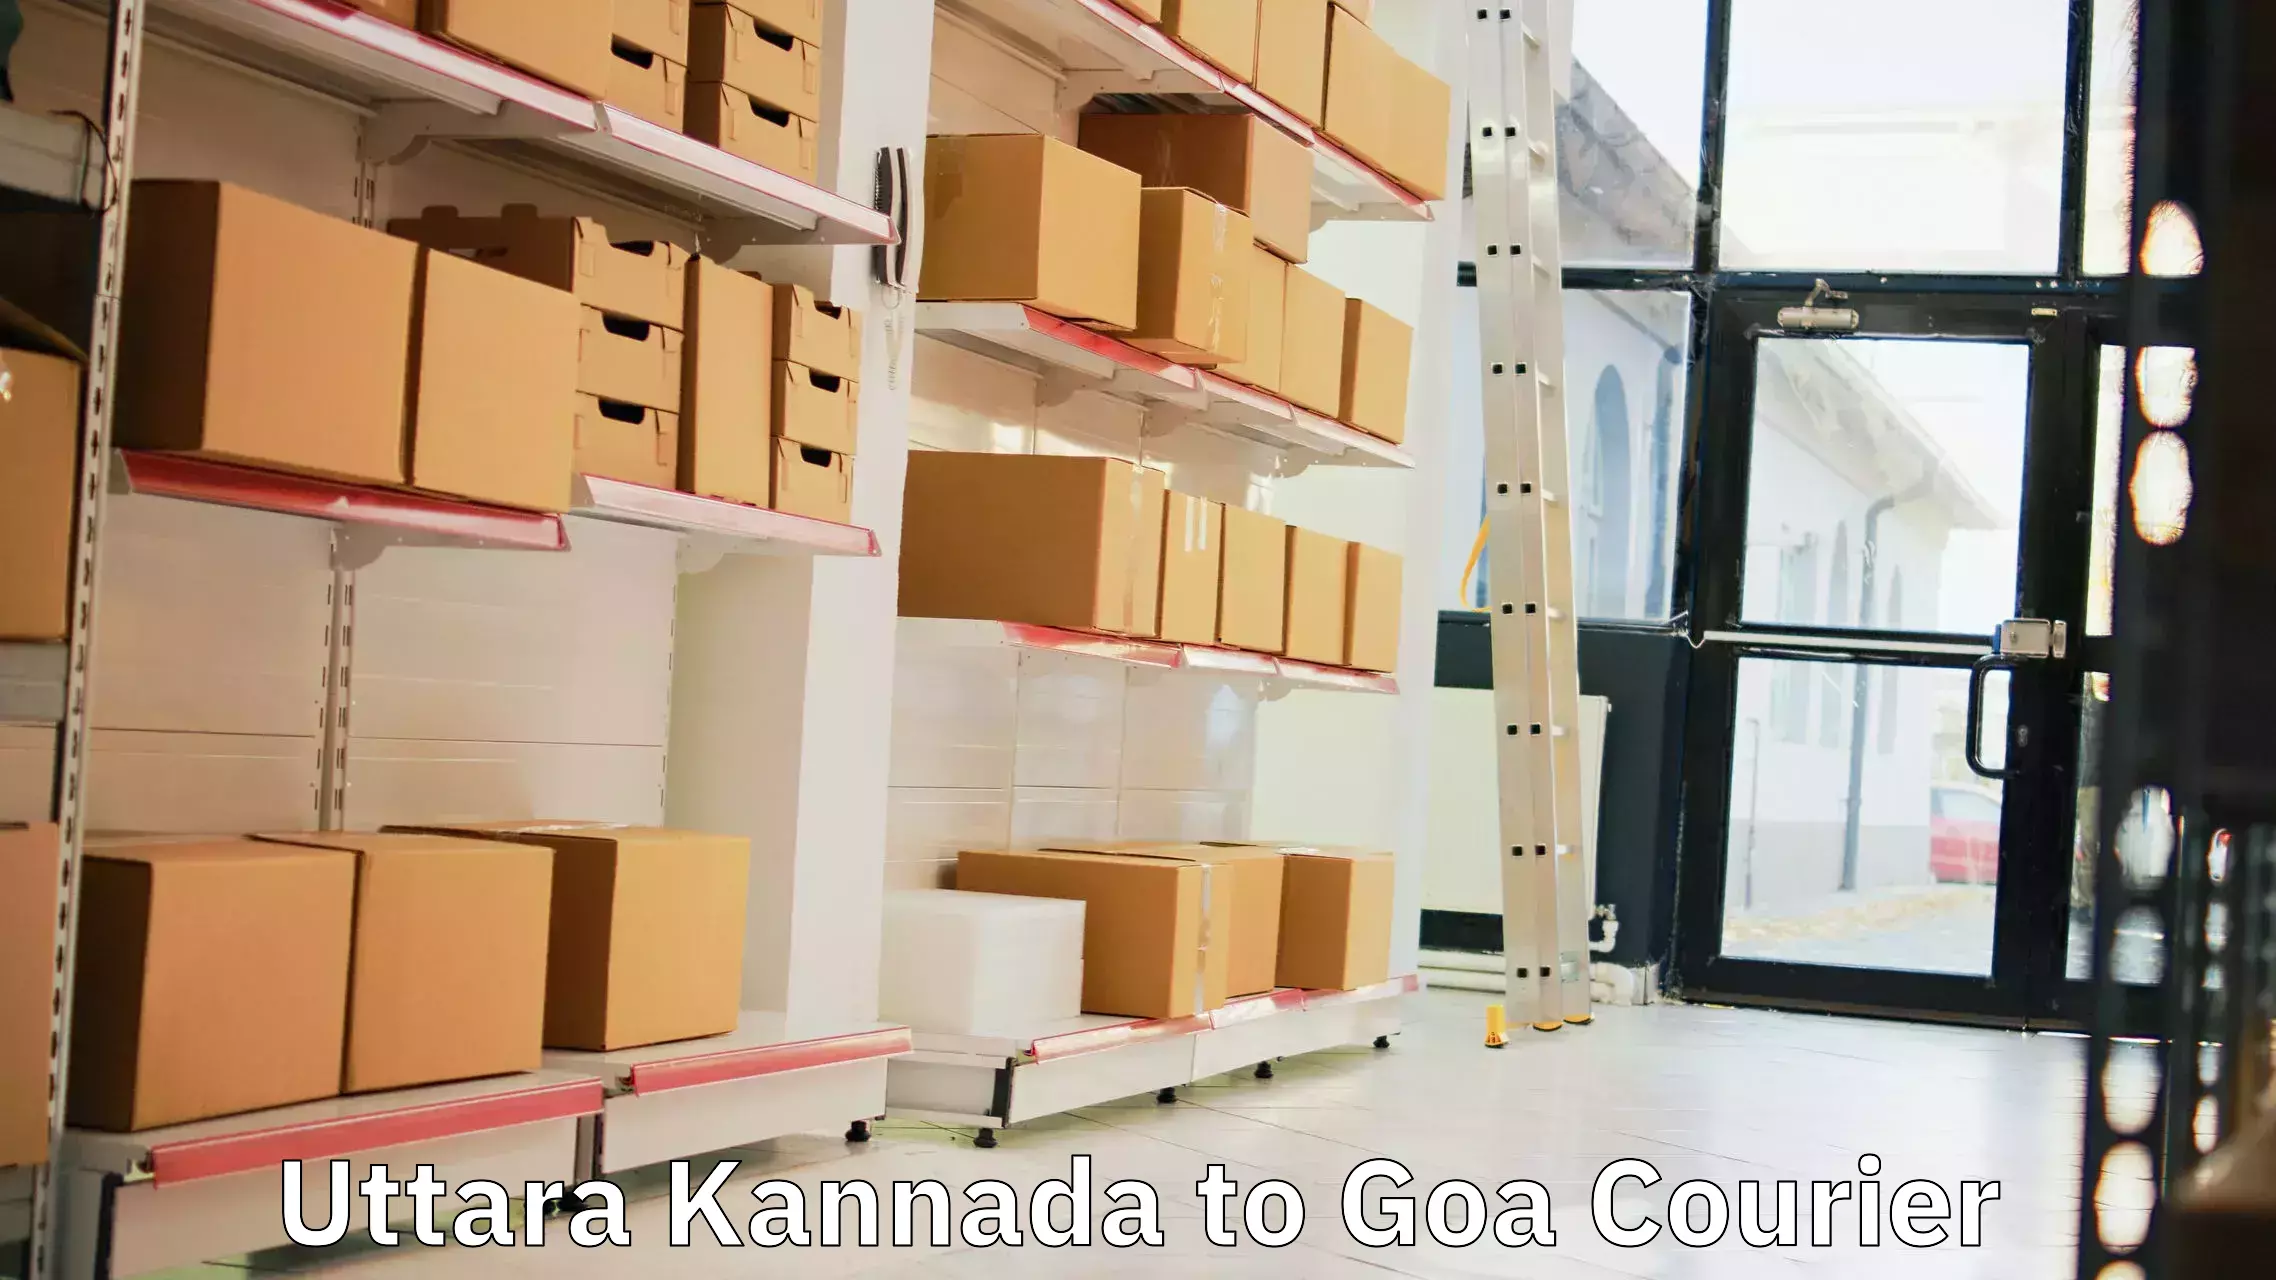 Express delivery capabilities Uttara Kannada to NIT Goa